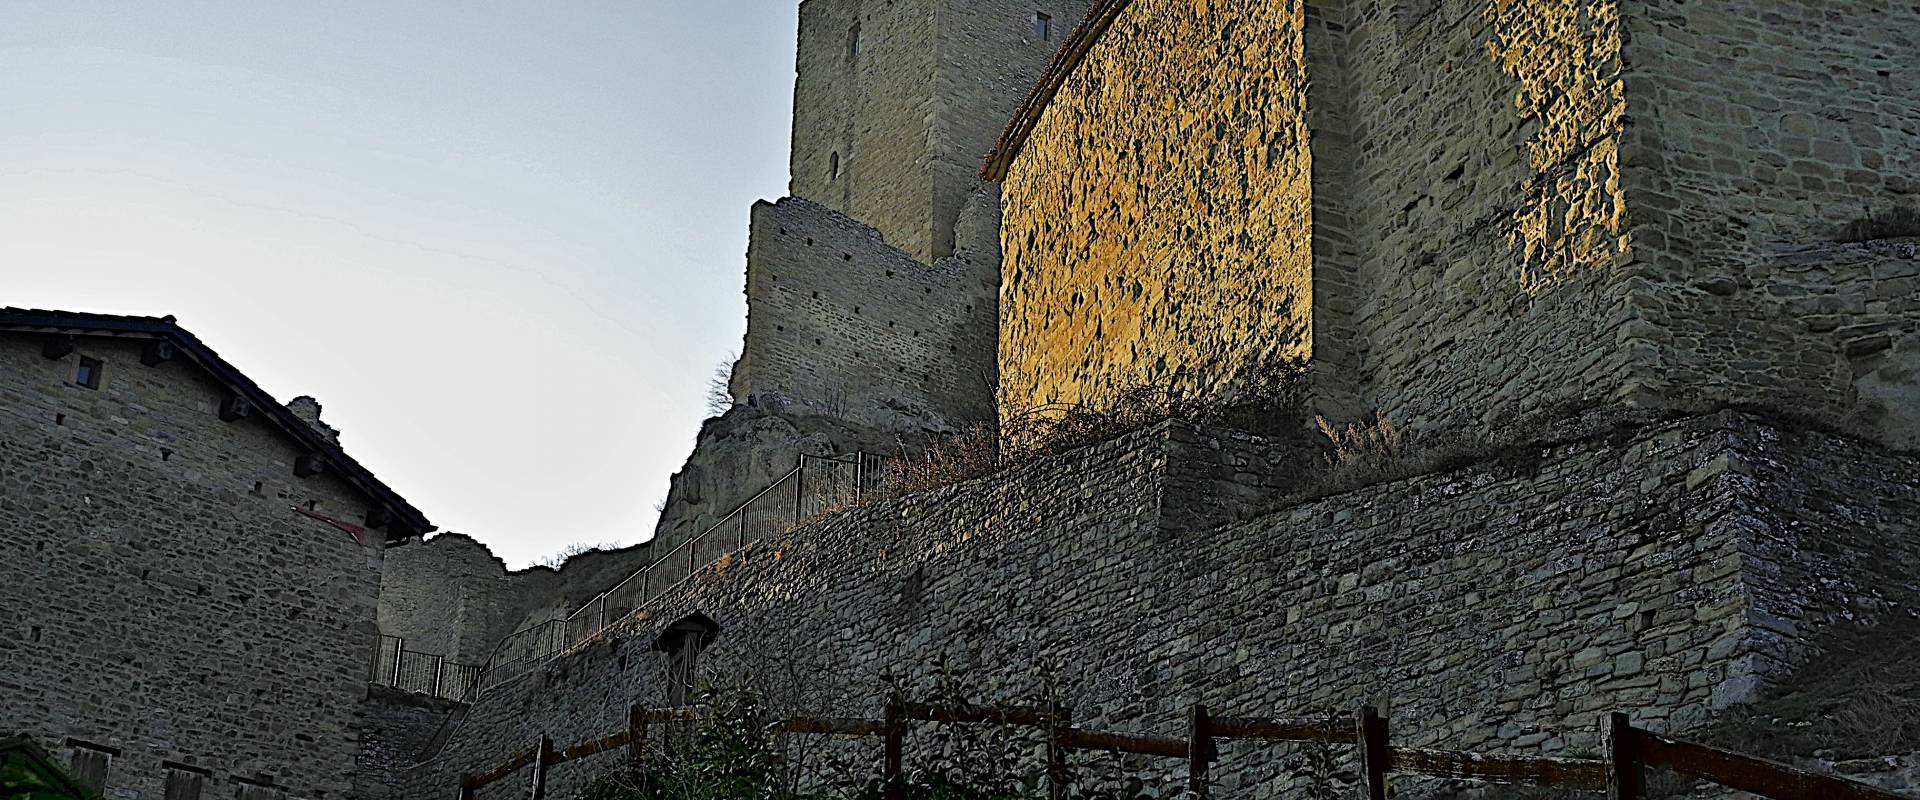 Castello Matildico di Carpineti - Il preferito dalla Contessa foto di Caba2011